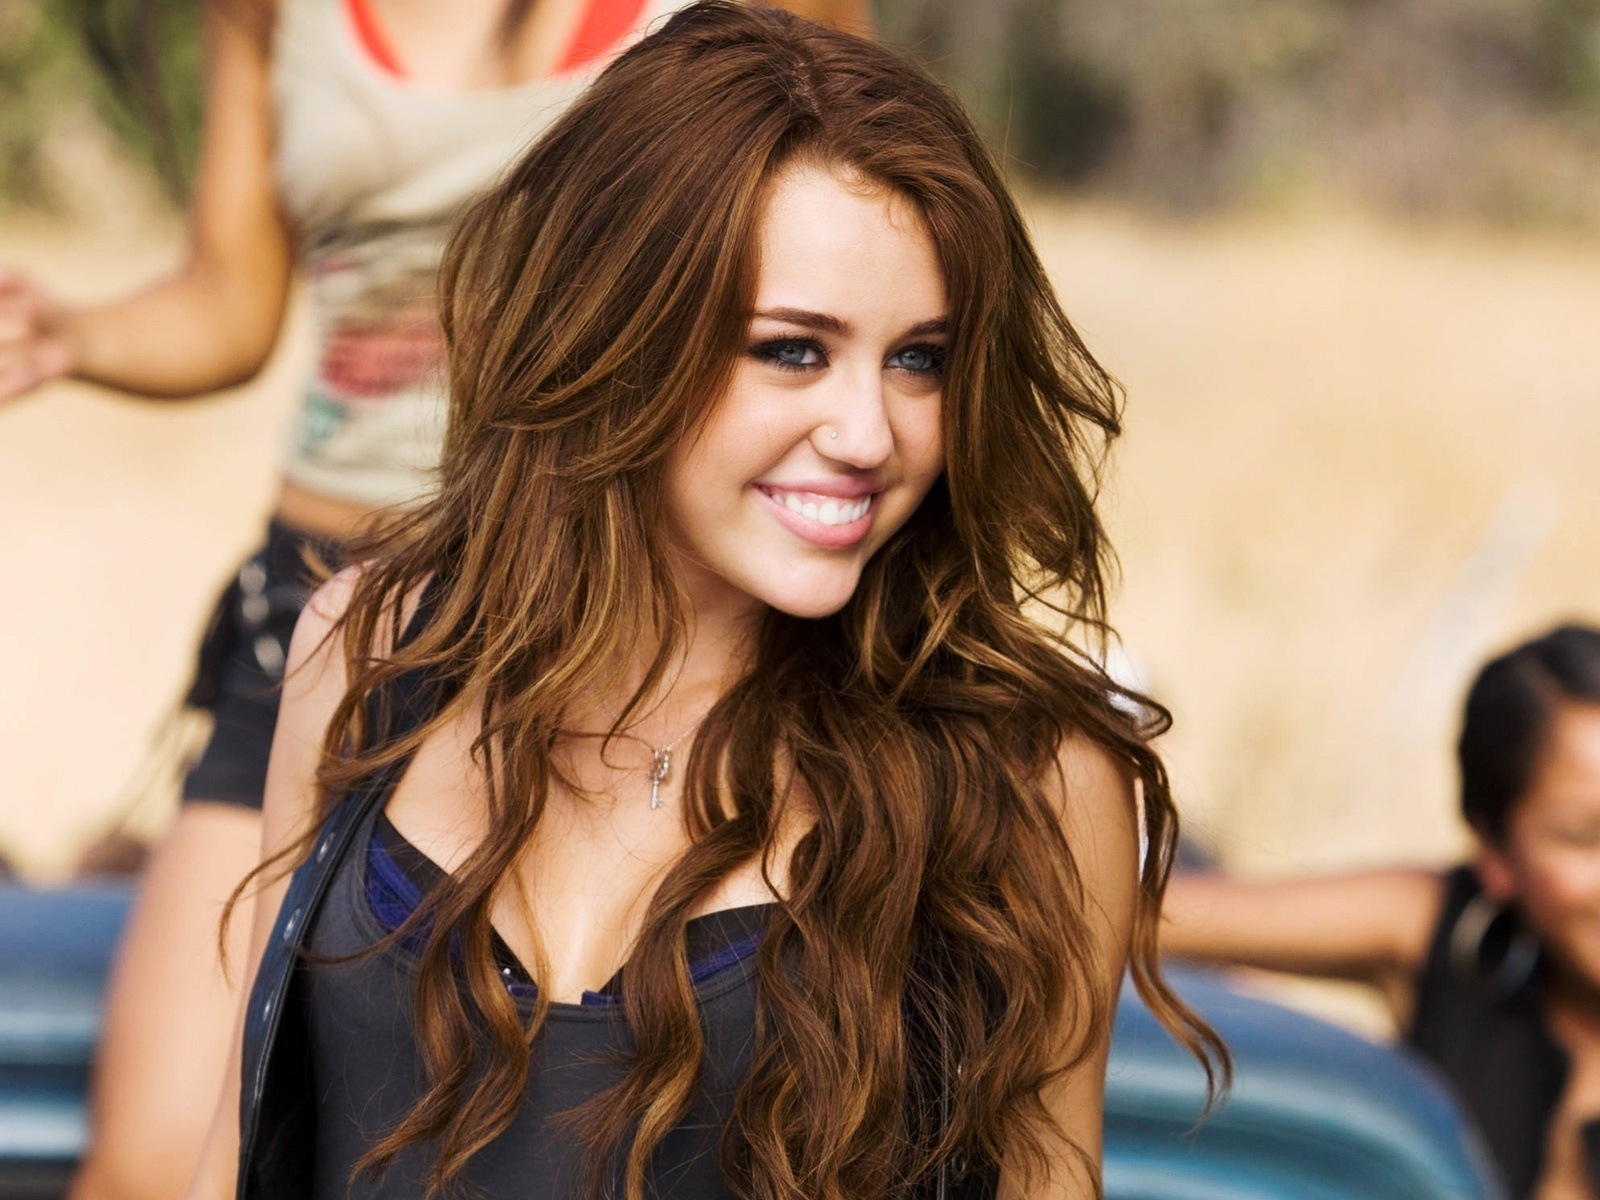 Miley Cyrus 2011